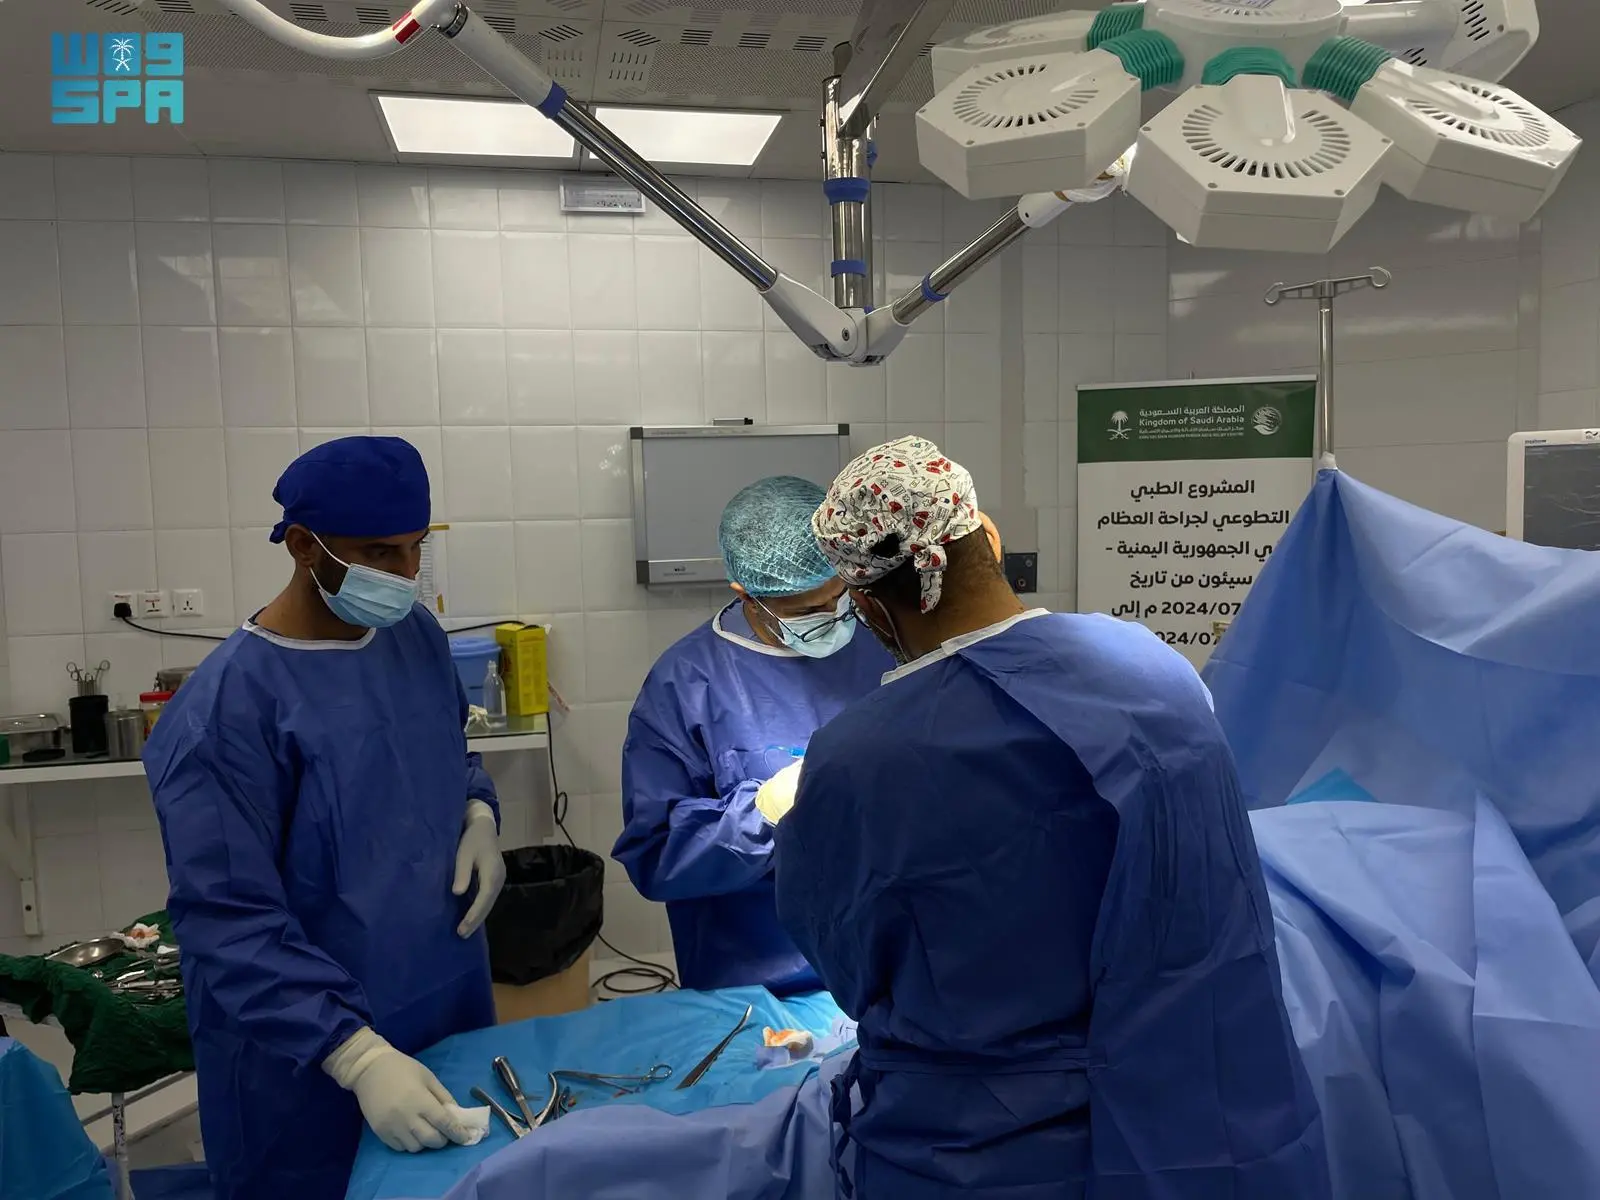 مركز الملك سلمان للإغاثة يختتم المشروع الطبي التطوعي لجراحة العظام في سيئون